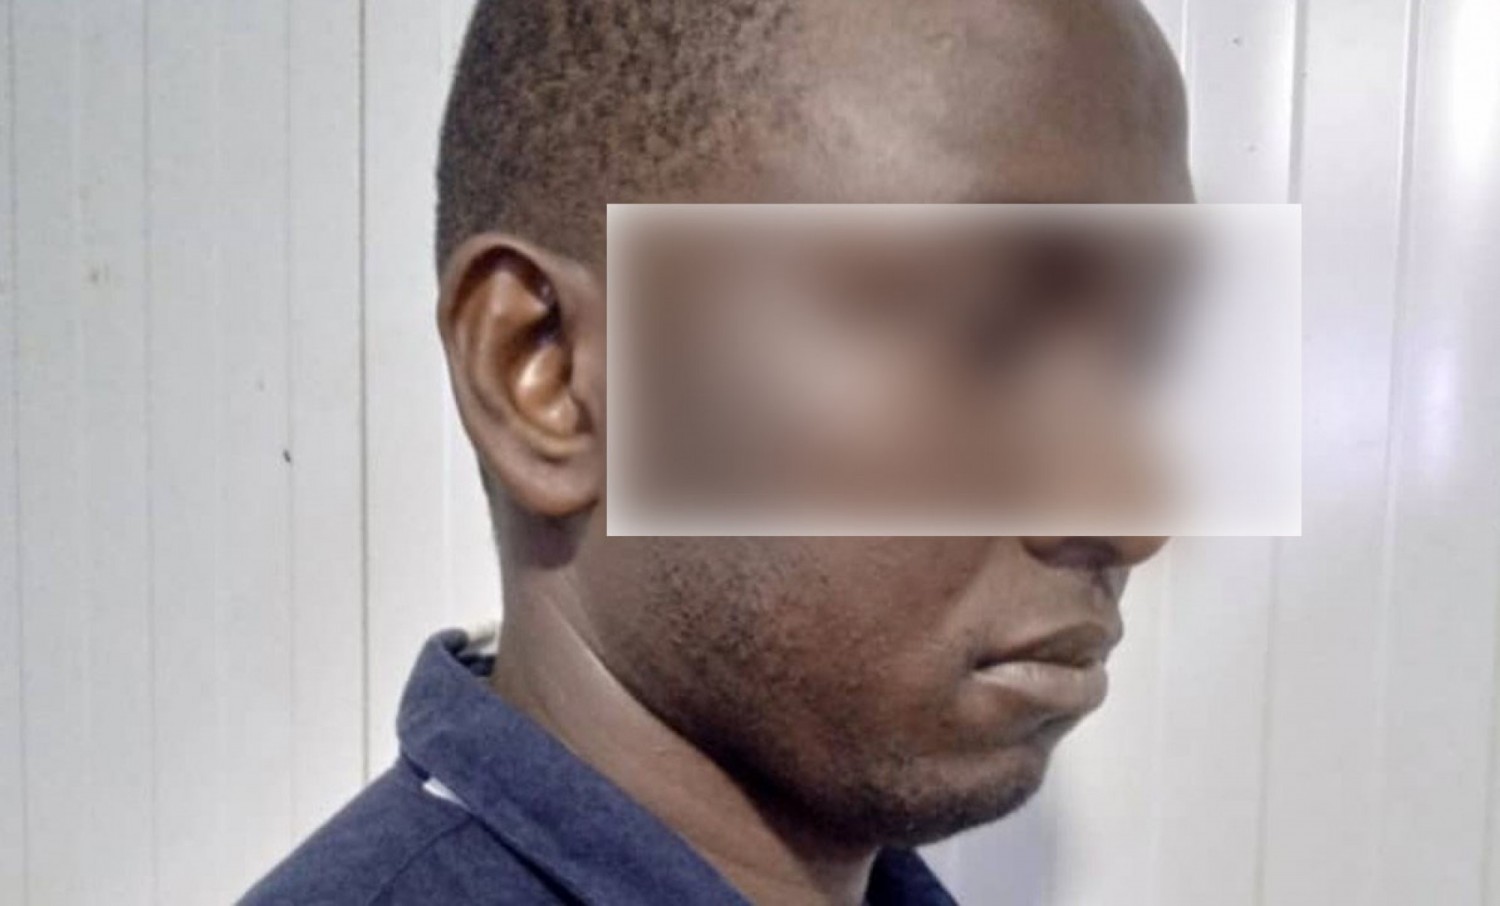 Côte d'Ivoire : Le frappeur de policier était un garde pénitentiaire, après une fuite, il se rend et demande pardon